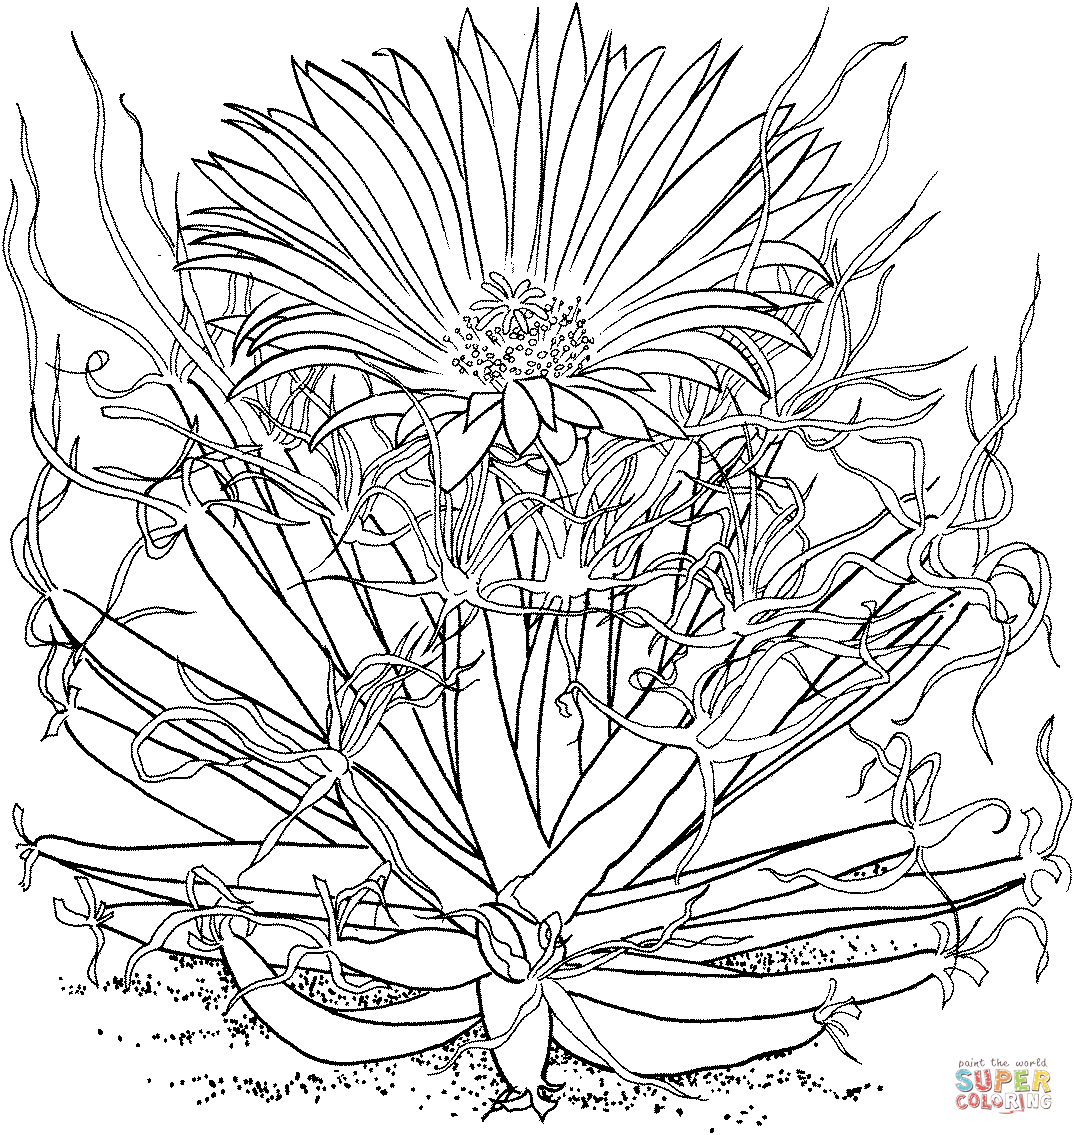 Leuchtenbergia principis ou cacto agave de Cactus